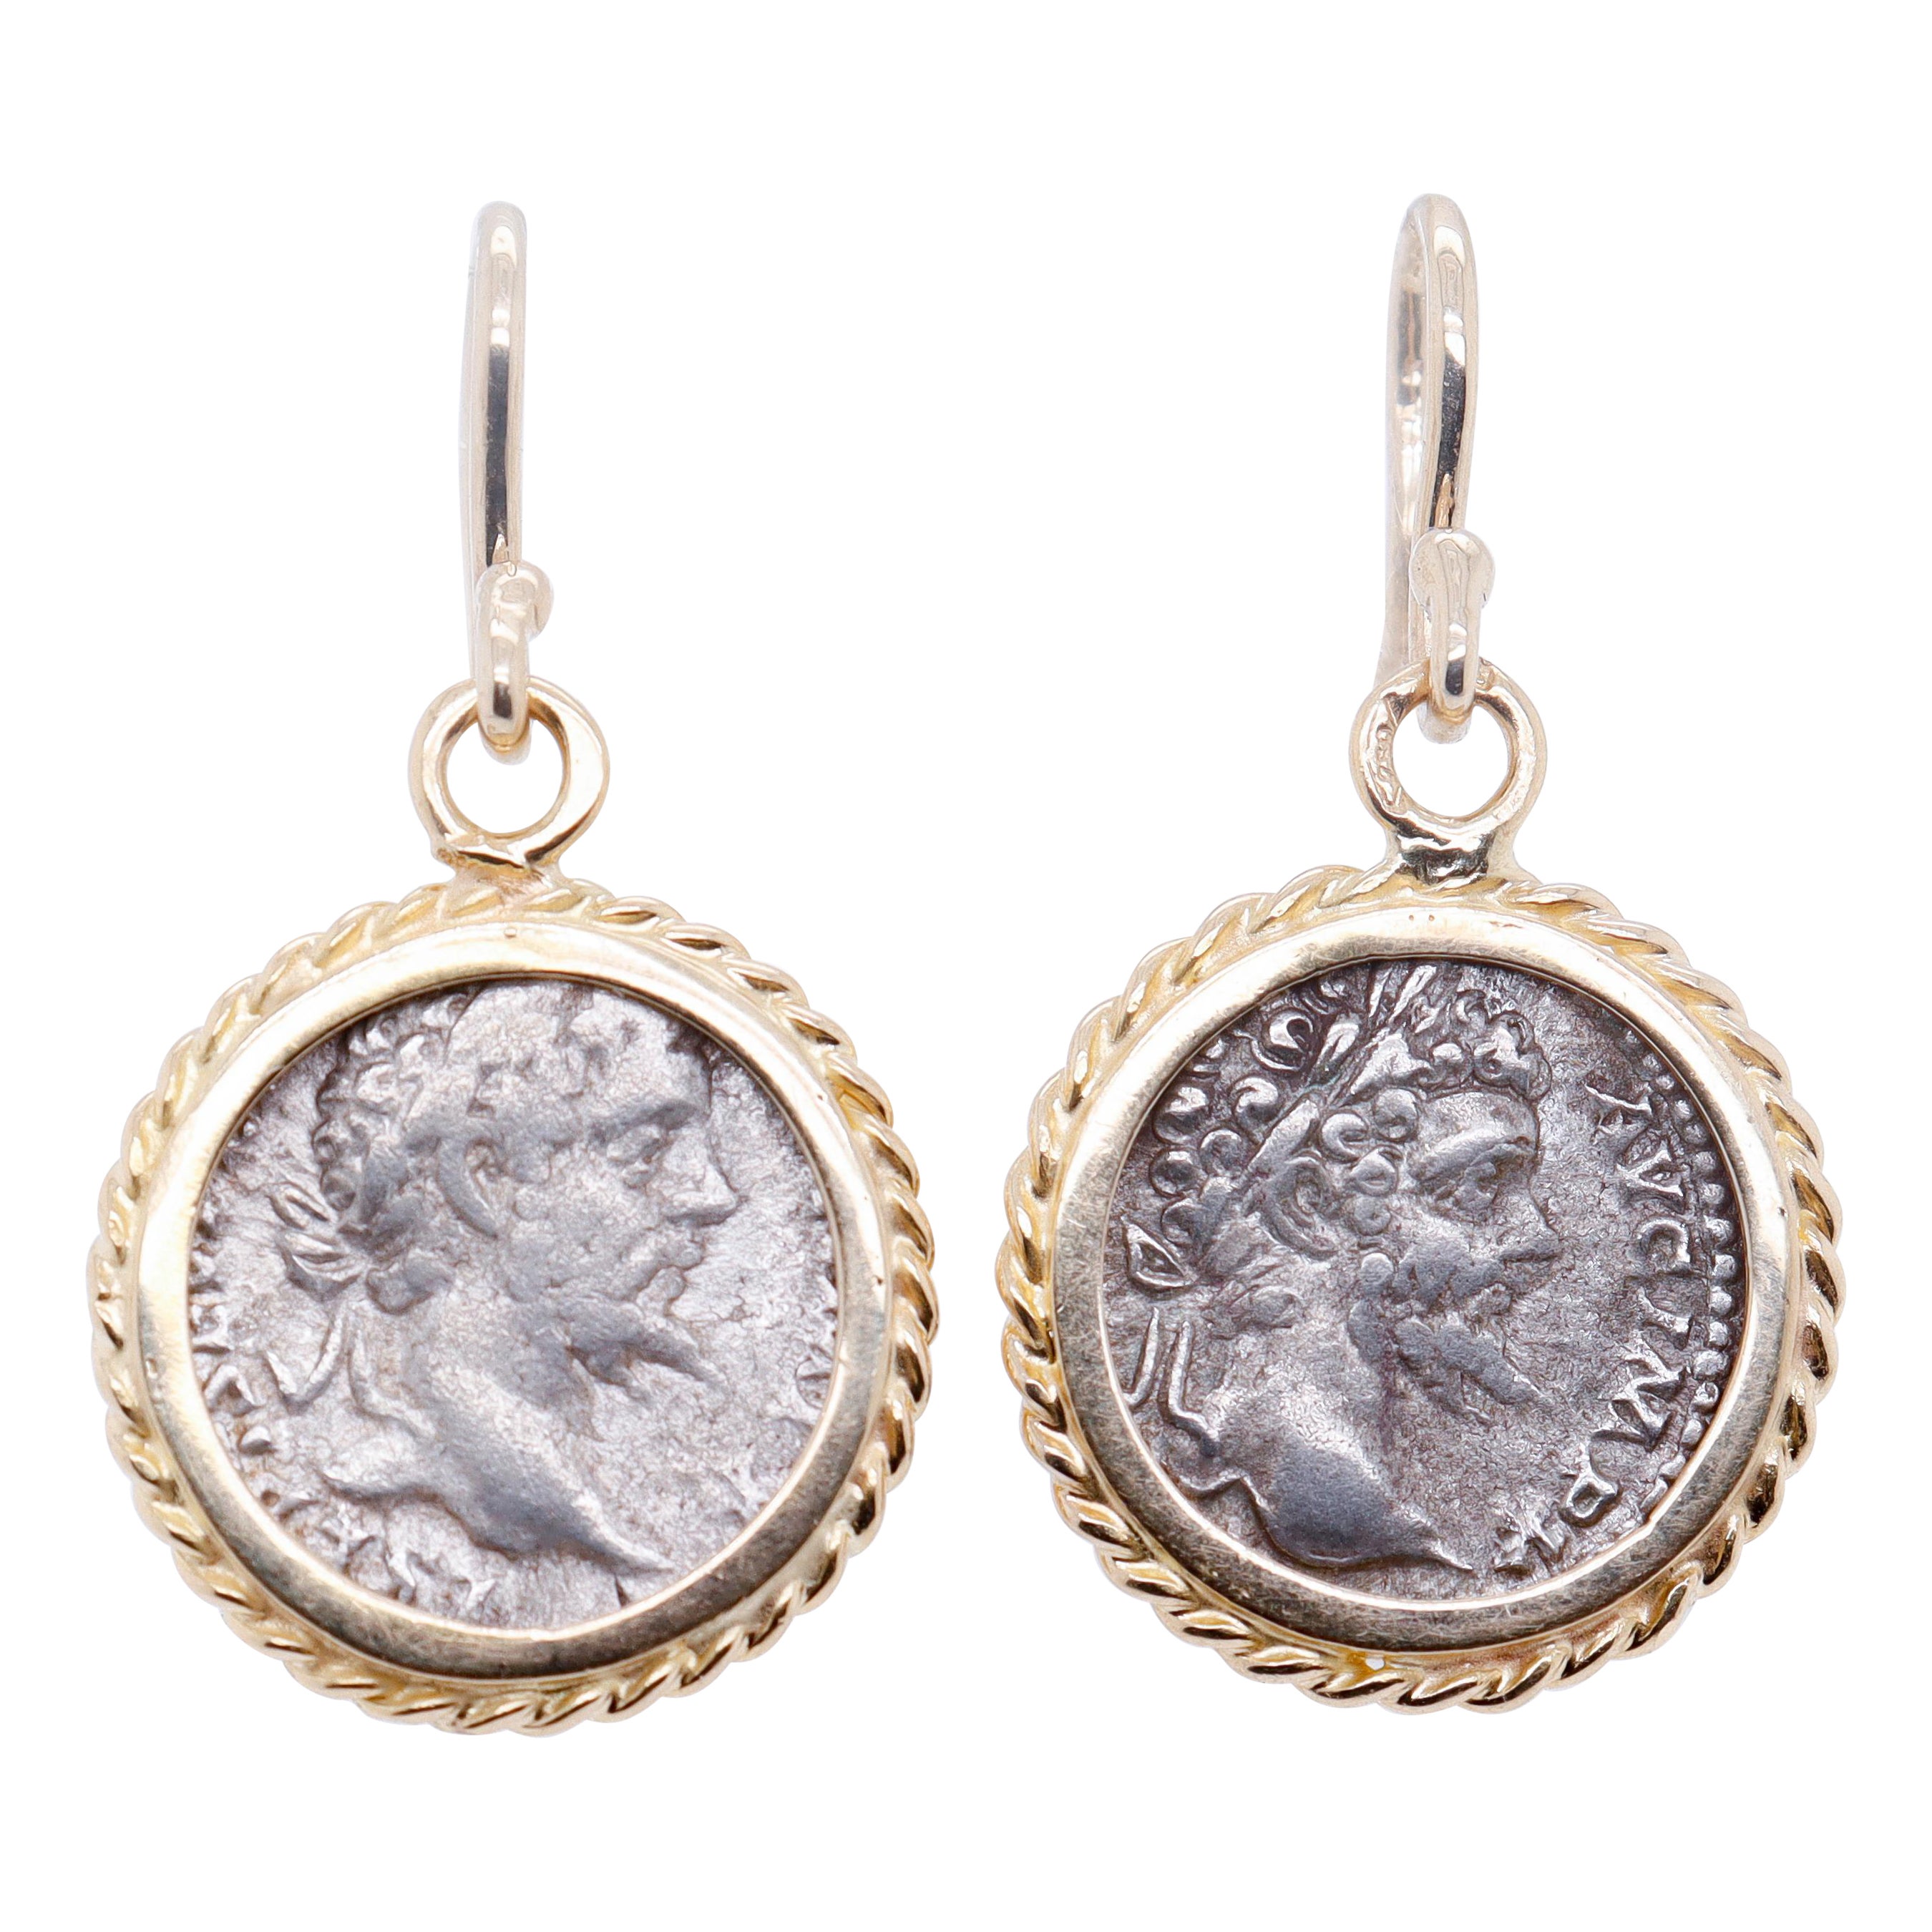 Pair of 18k Gold & Ancient Roman Coin Marcus Aurelius Denarius Earrings